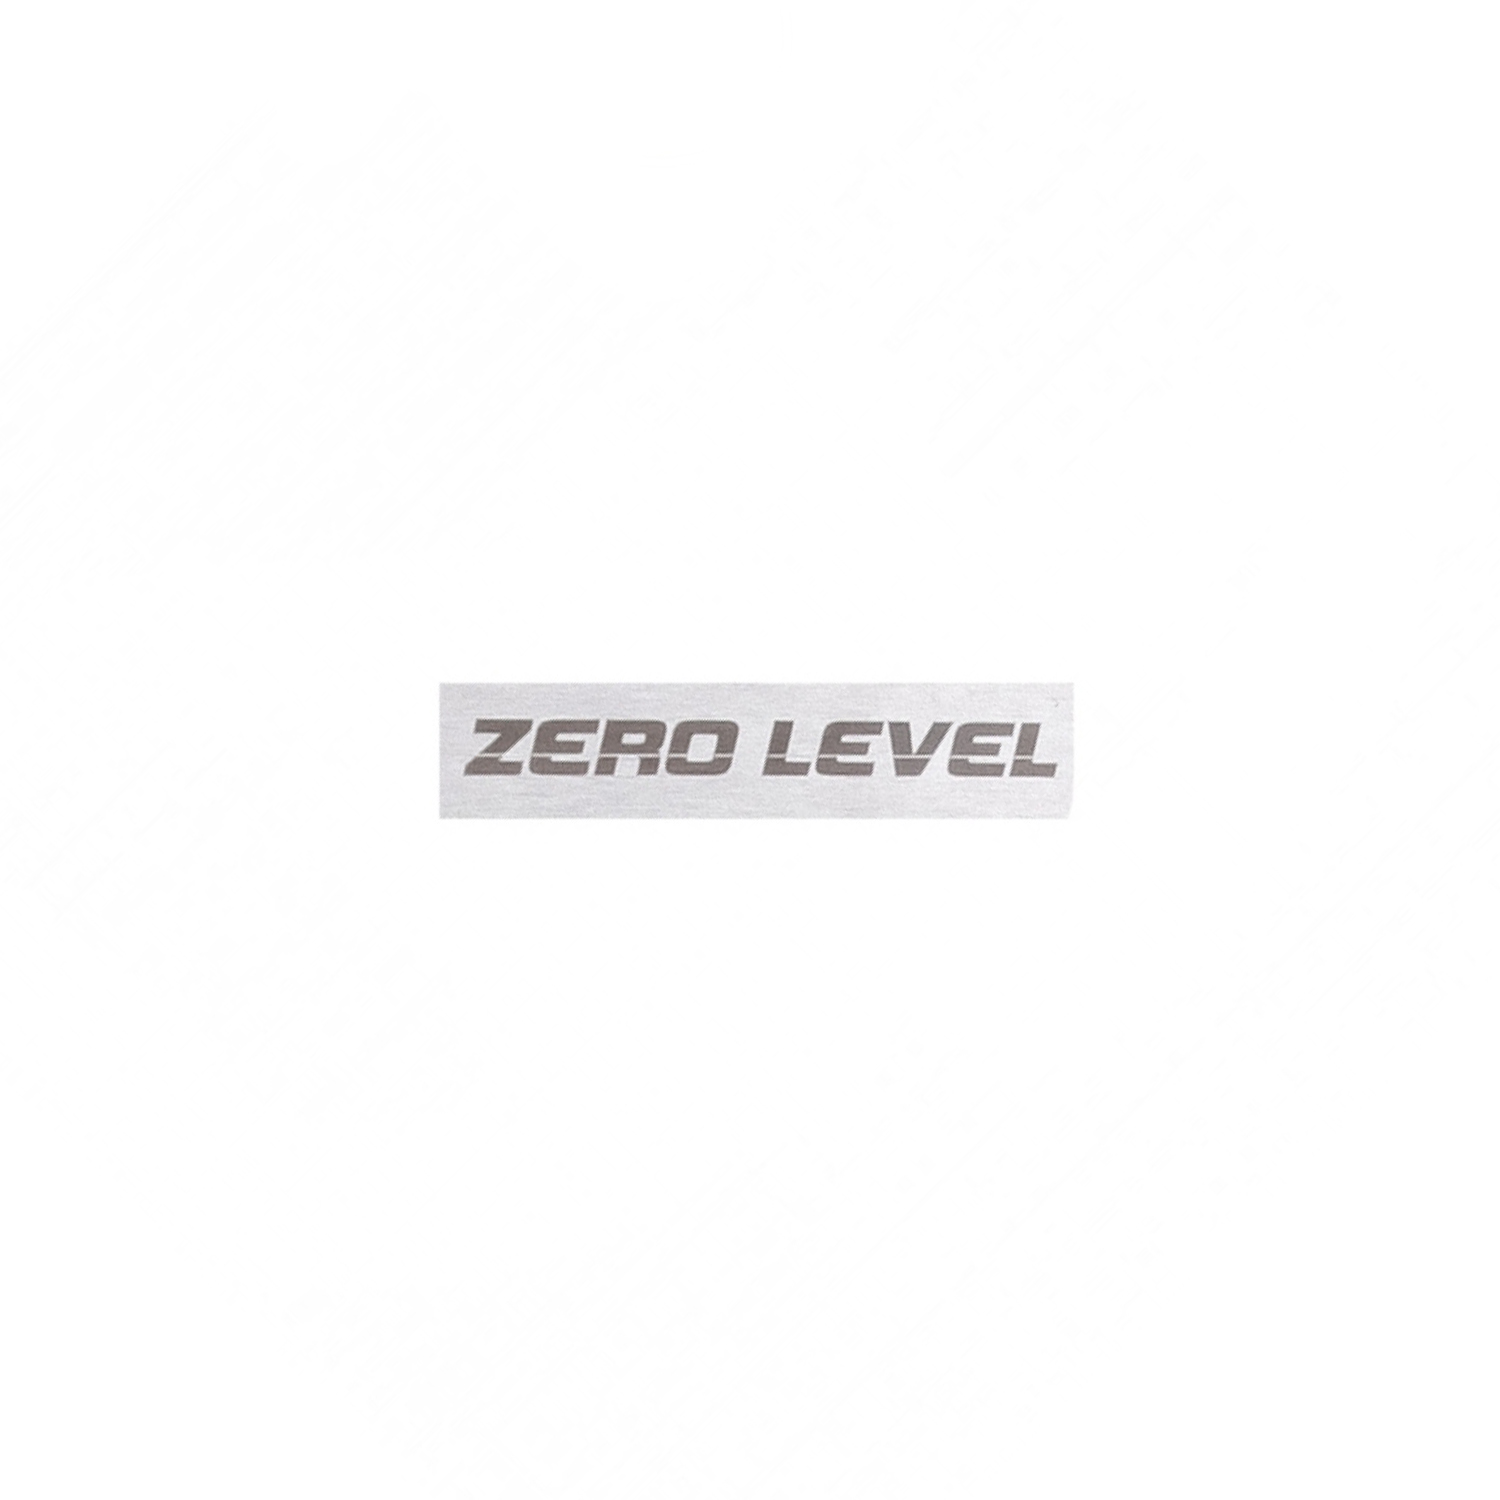 Metal pad "Zero level" for Hapstone R2